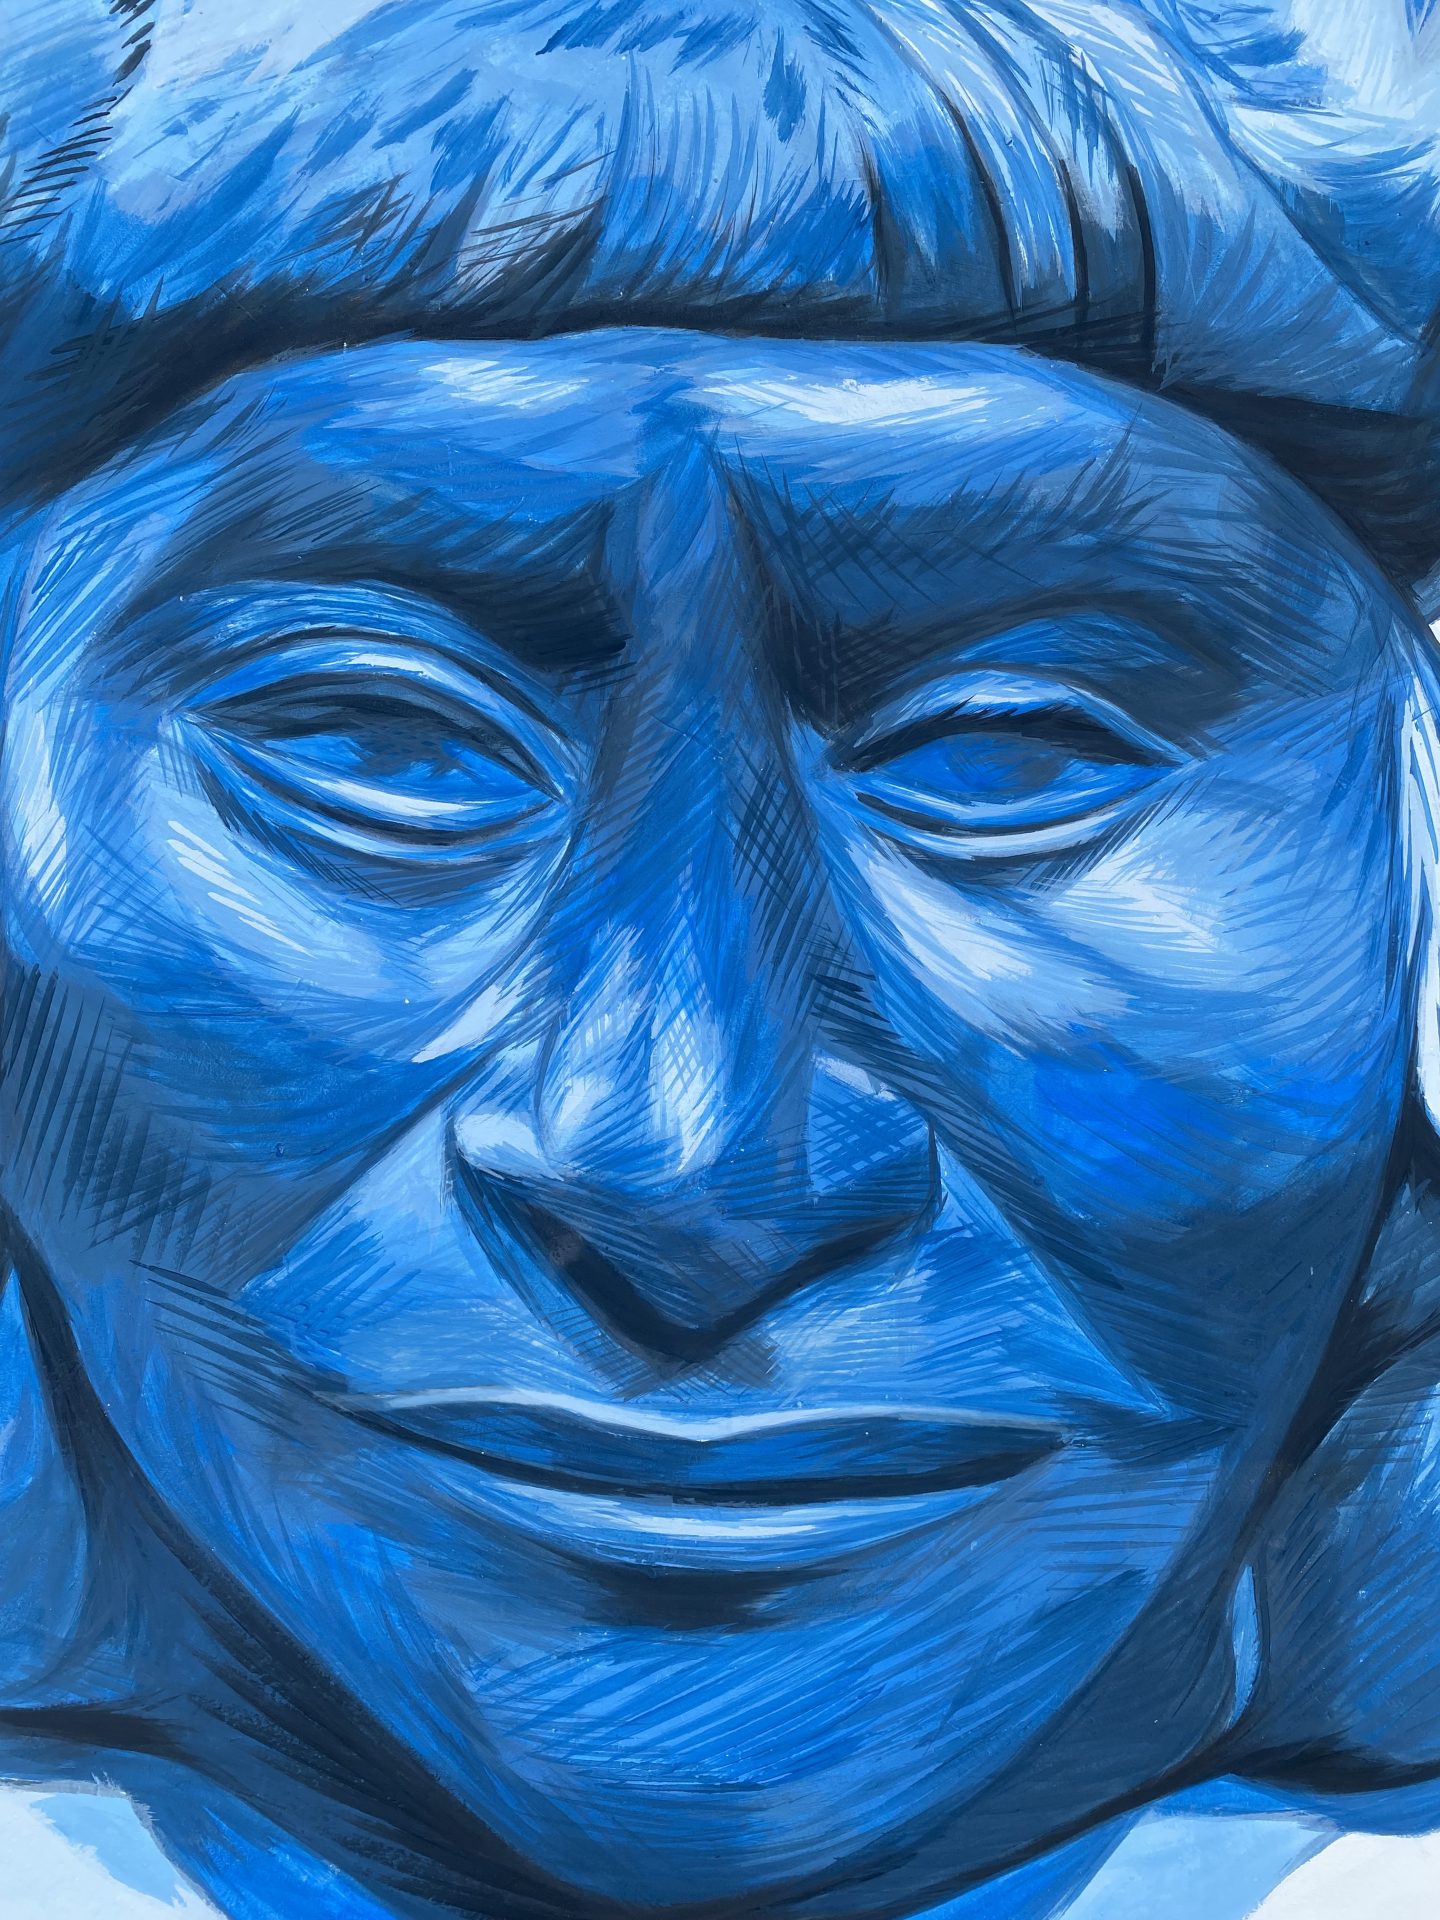 fresque murale bleu street art Pérou Lagunas Jungle Loreto Villa Wasi de la poesie Portrait Chumpi Faja Andes tradition textile Mochica civilisation précolombienne culture Kukama Kukamiria